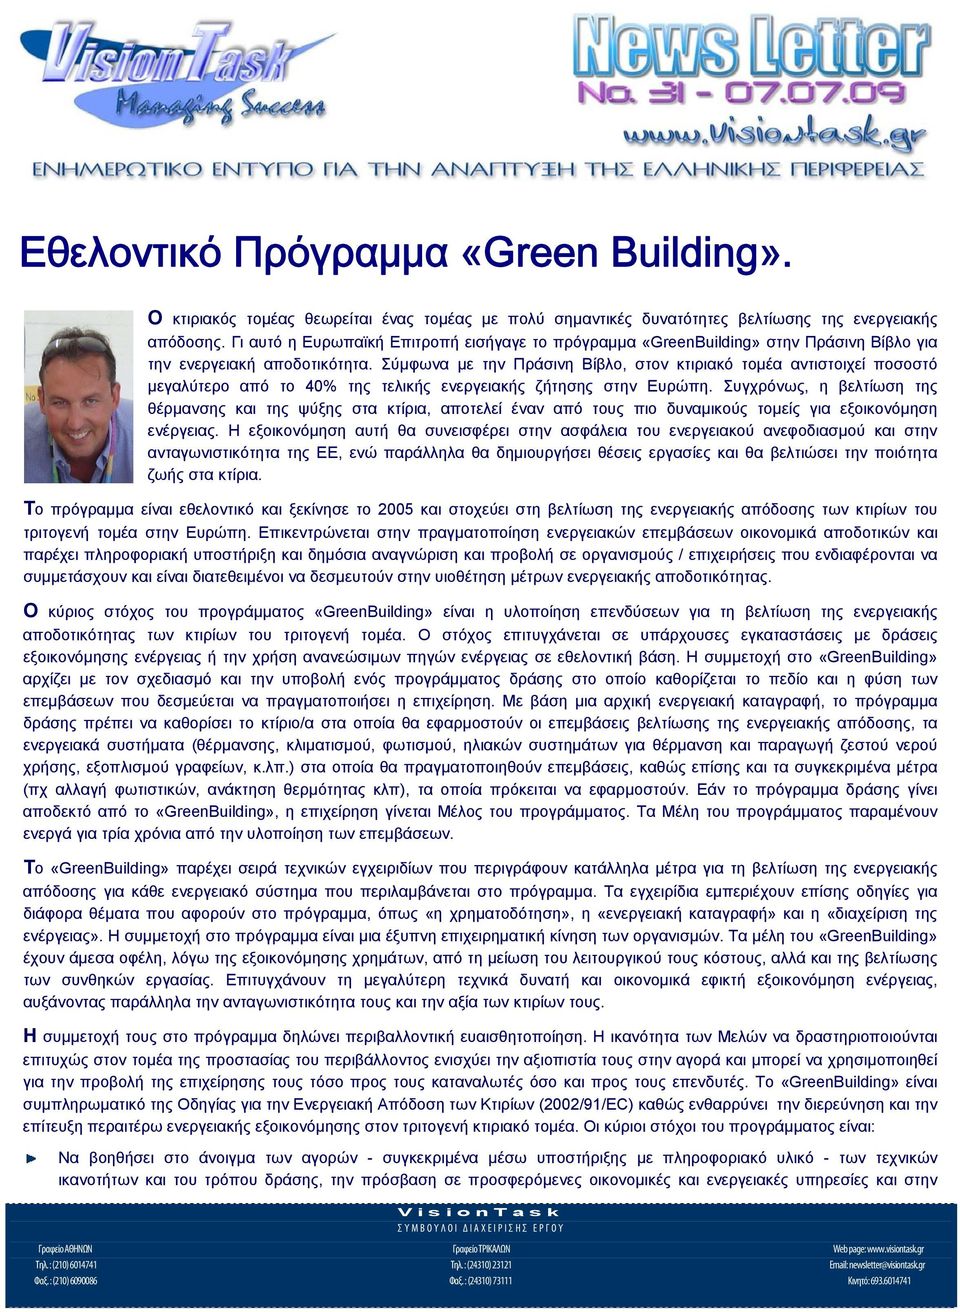 Σύμφωνα με την Πράσινη Βίβλο, στον κτιριακό τομέα αντιστοιχεί ποσοστό μεγαλύτερο από το 40% της τελικής ενεργειακής ζήτησης στην Ευρώπη.